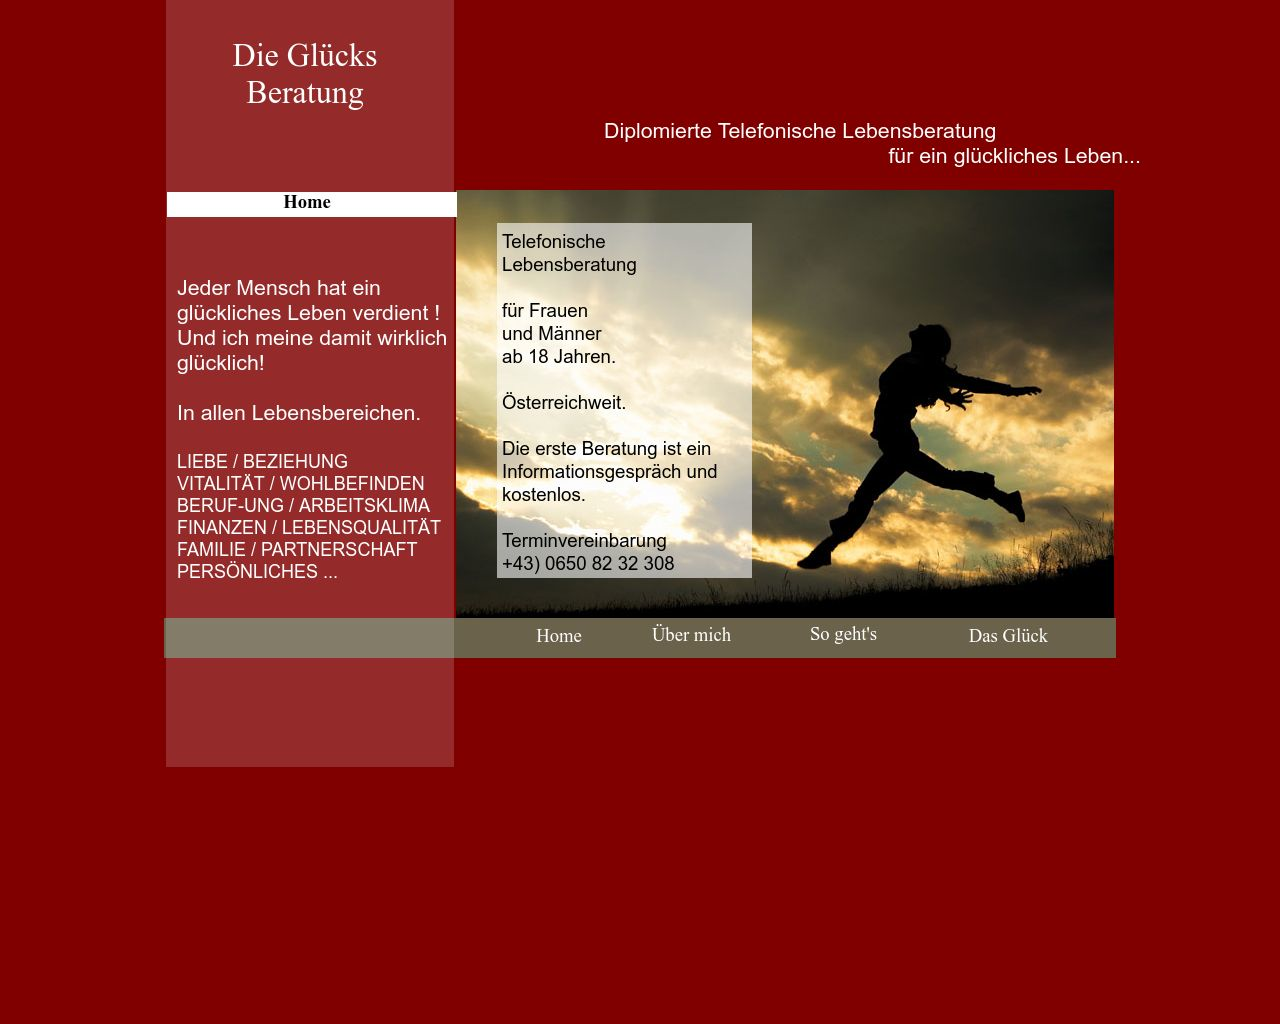 Bild Website diegluecksberaterin.at in 1280x1024